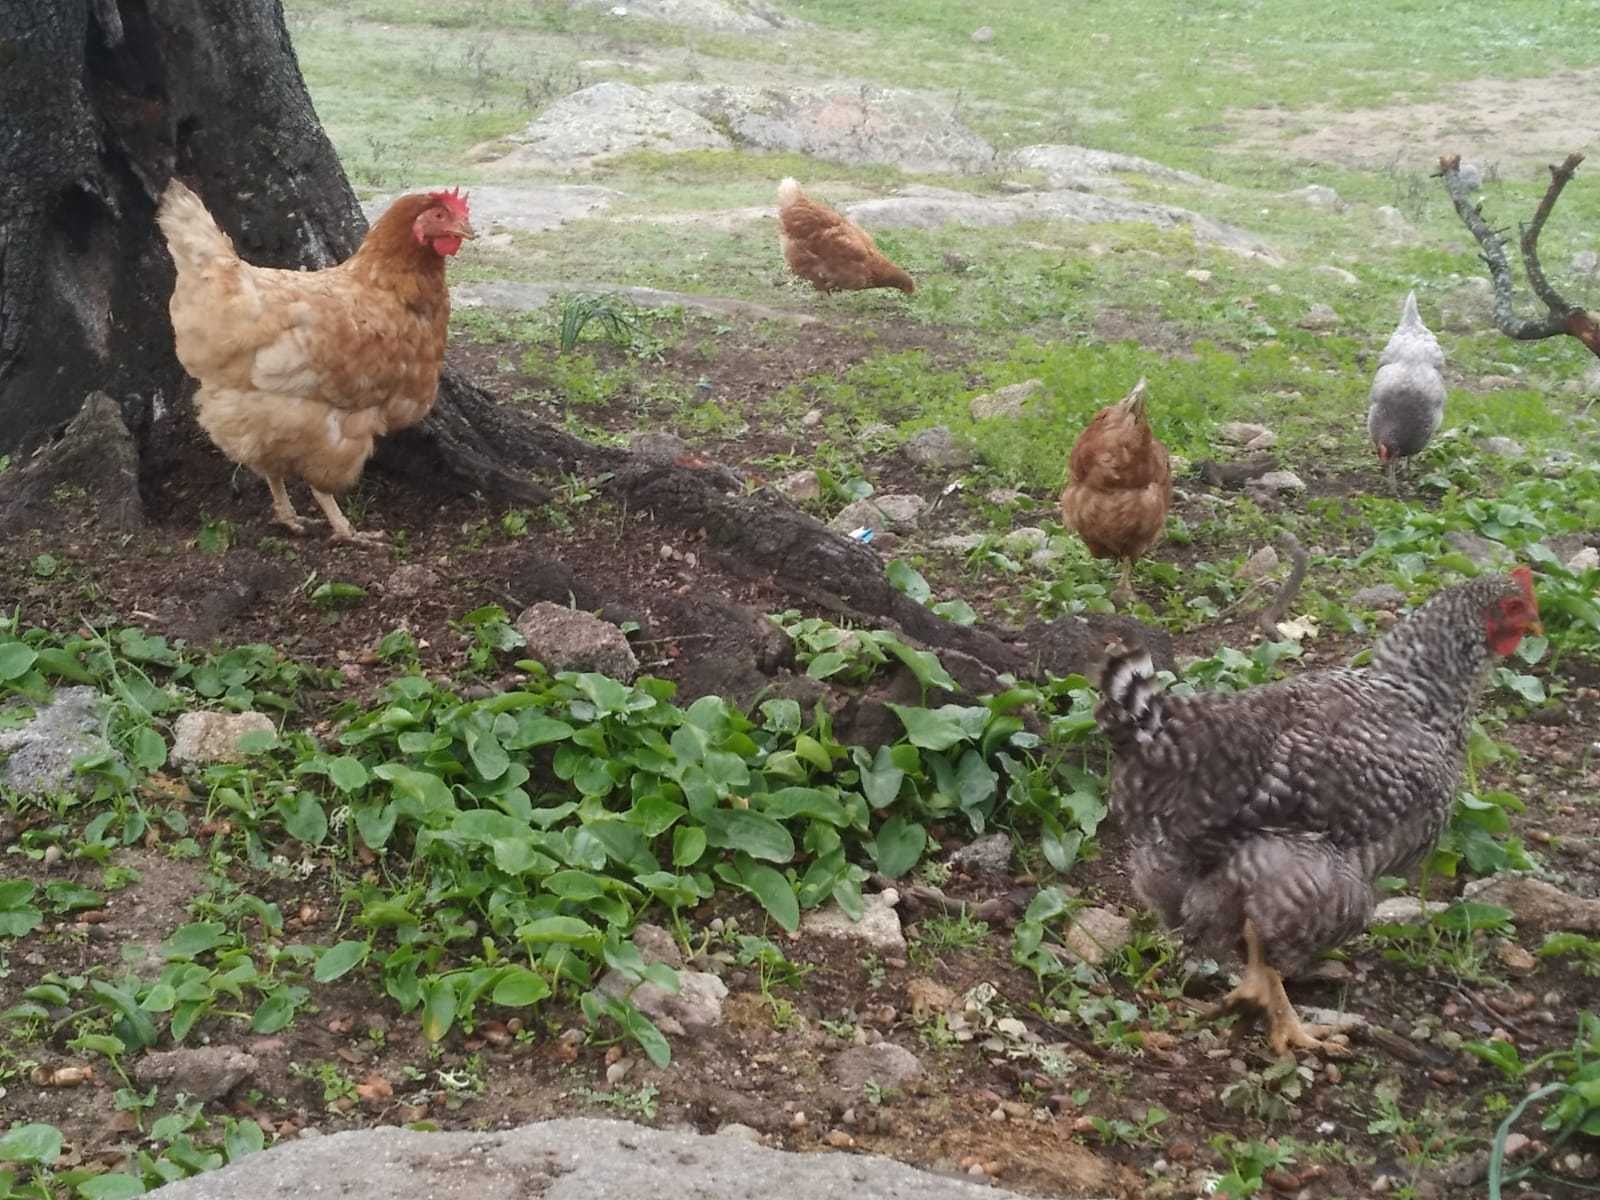 Ovos de galinhas criadas a campo